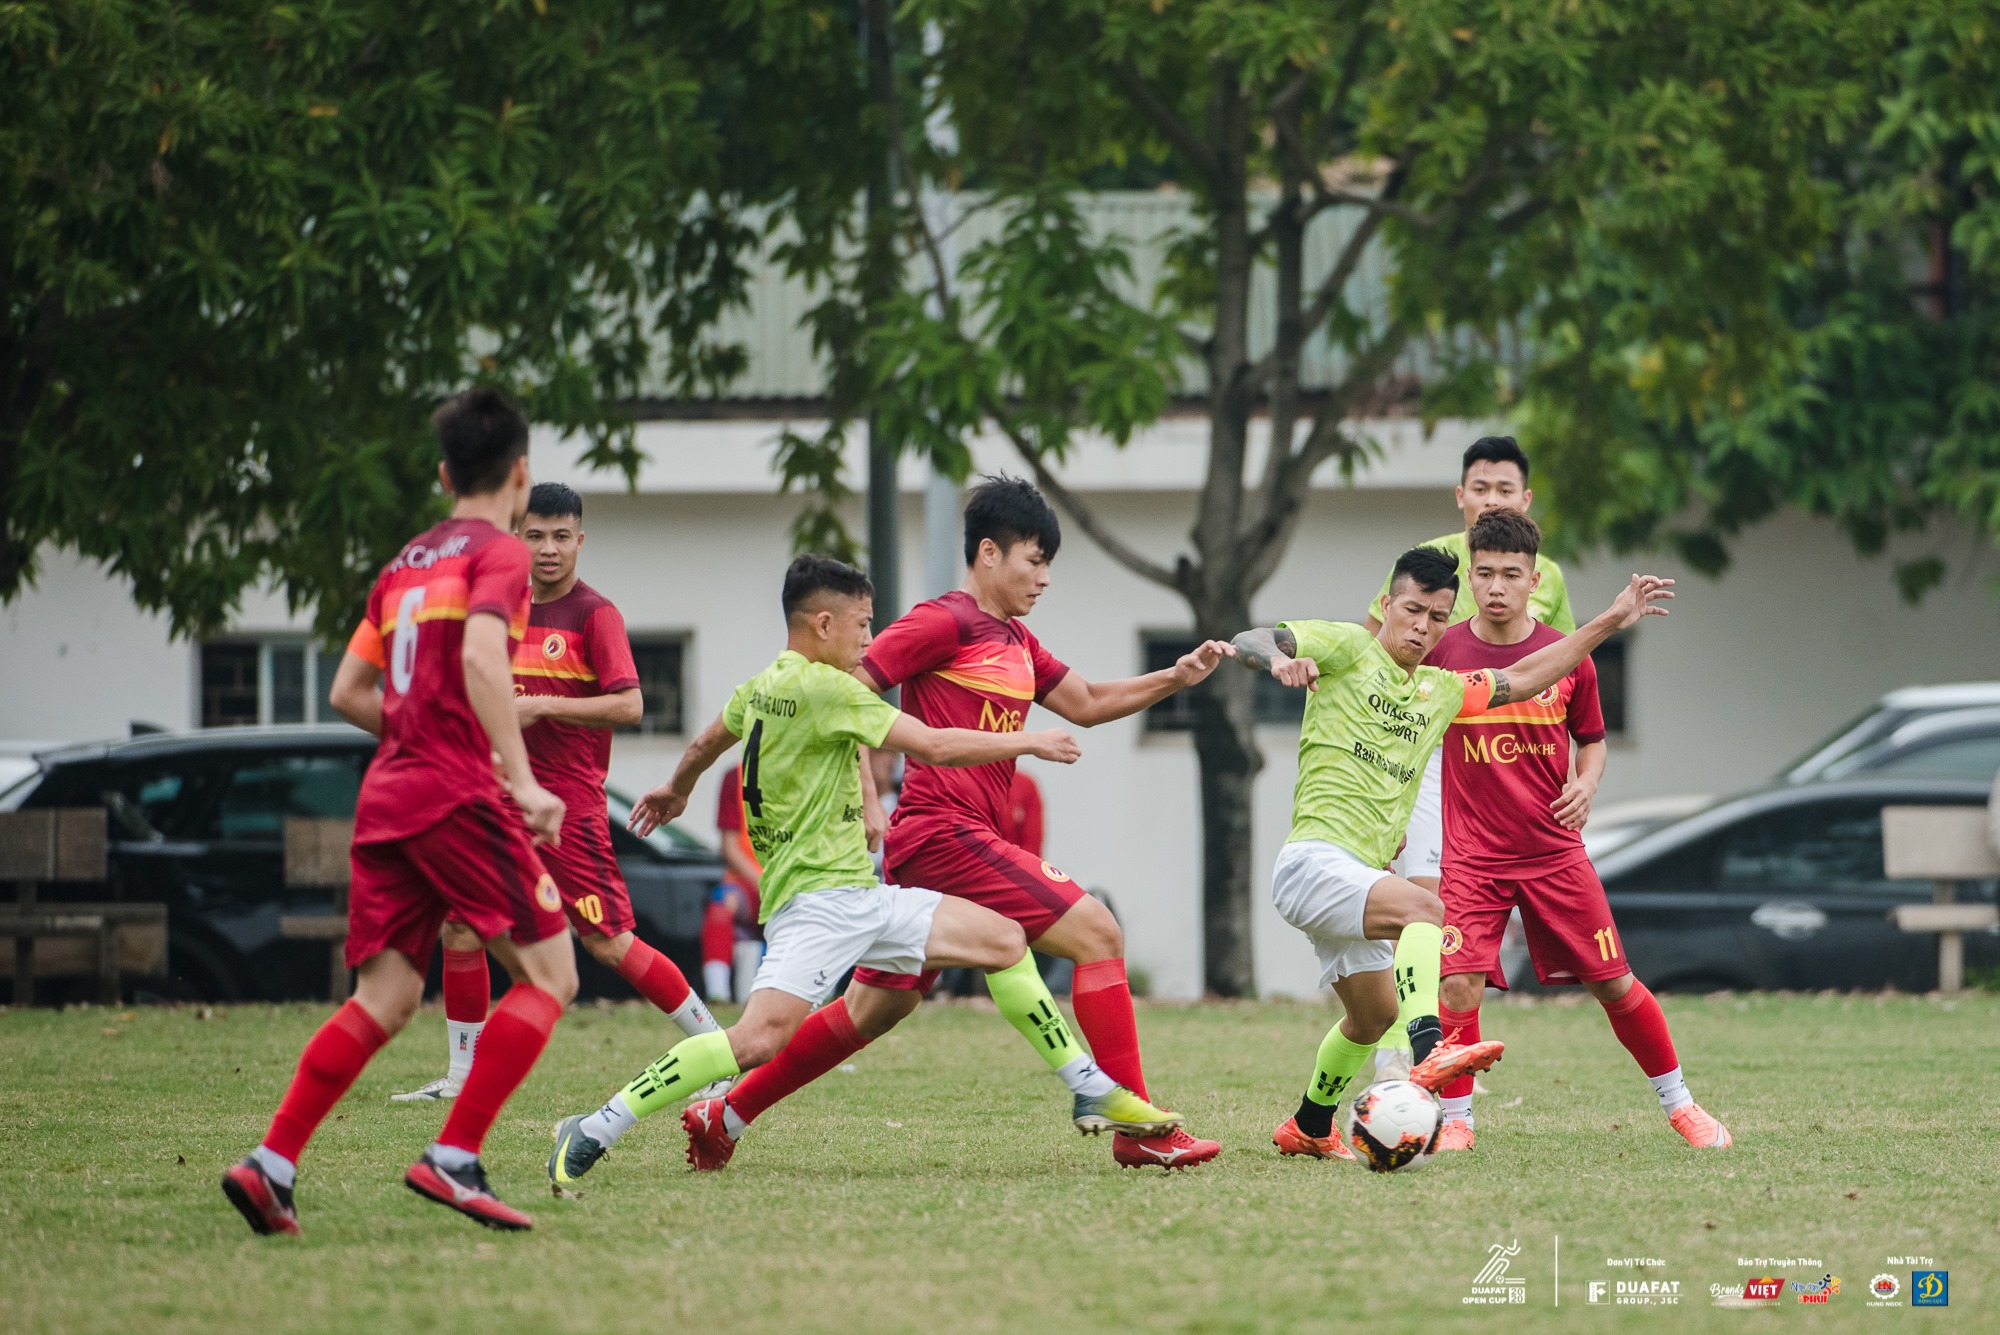 DuaFat Open là giải đấu bóng đá phong trào của doanh nghiệp được tổ chức quy củ trên địa bàn Hà Nội 